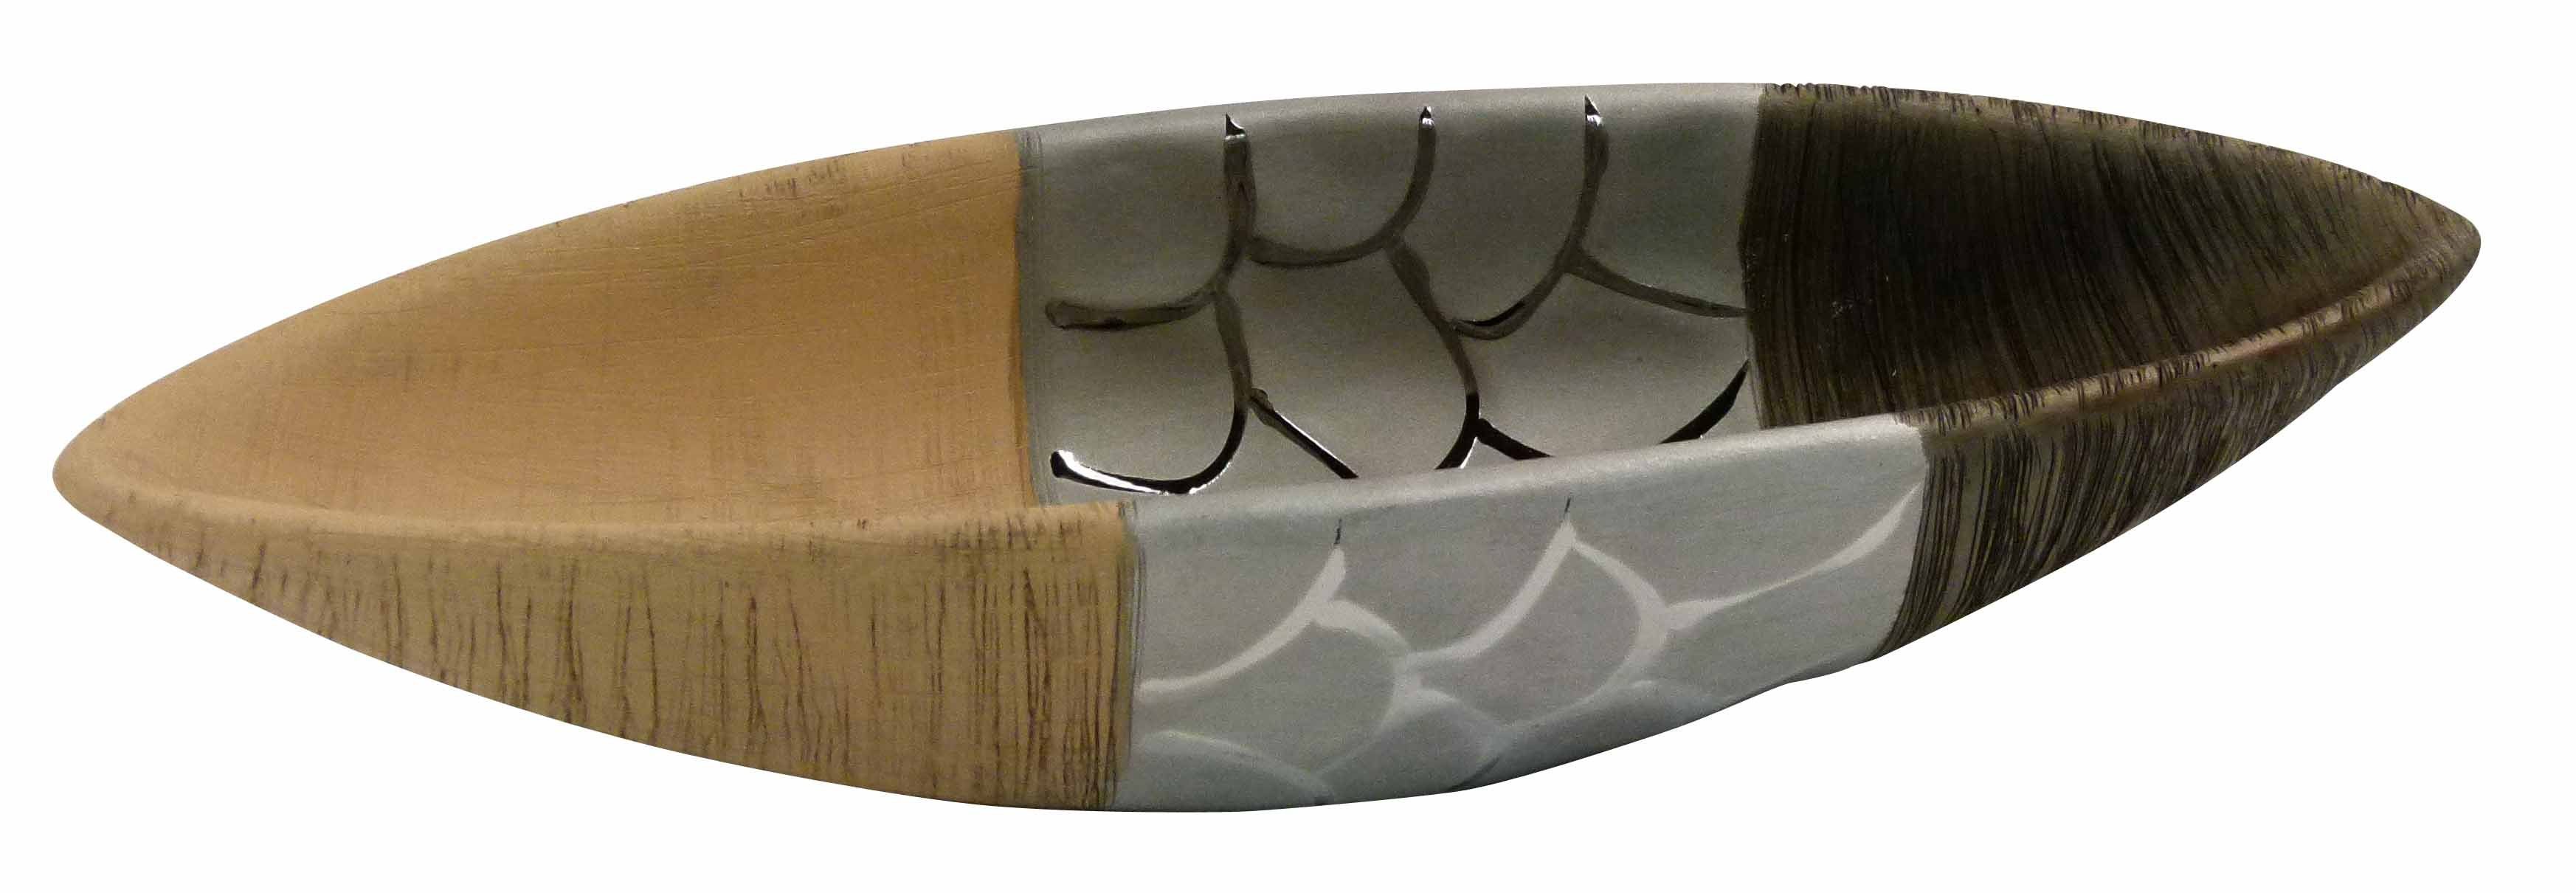 GlasArt Dekoschale Deko-schale Obstschale Schale Boot-form Braun Natur 32,5x10,5cm